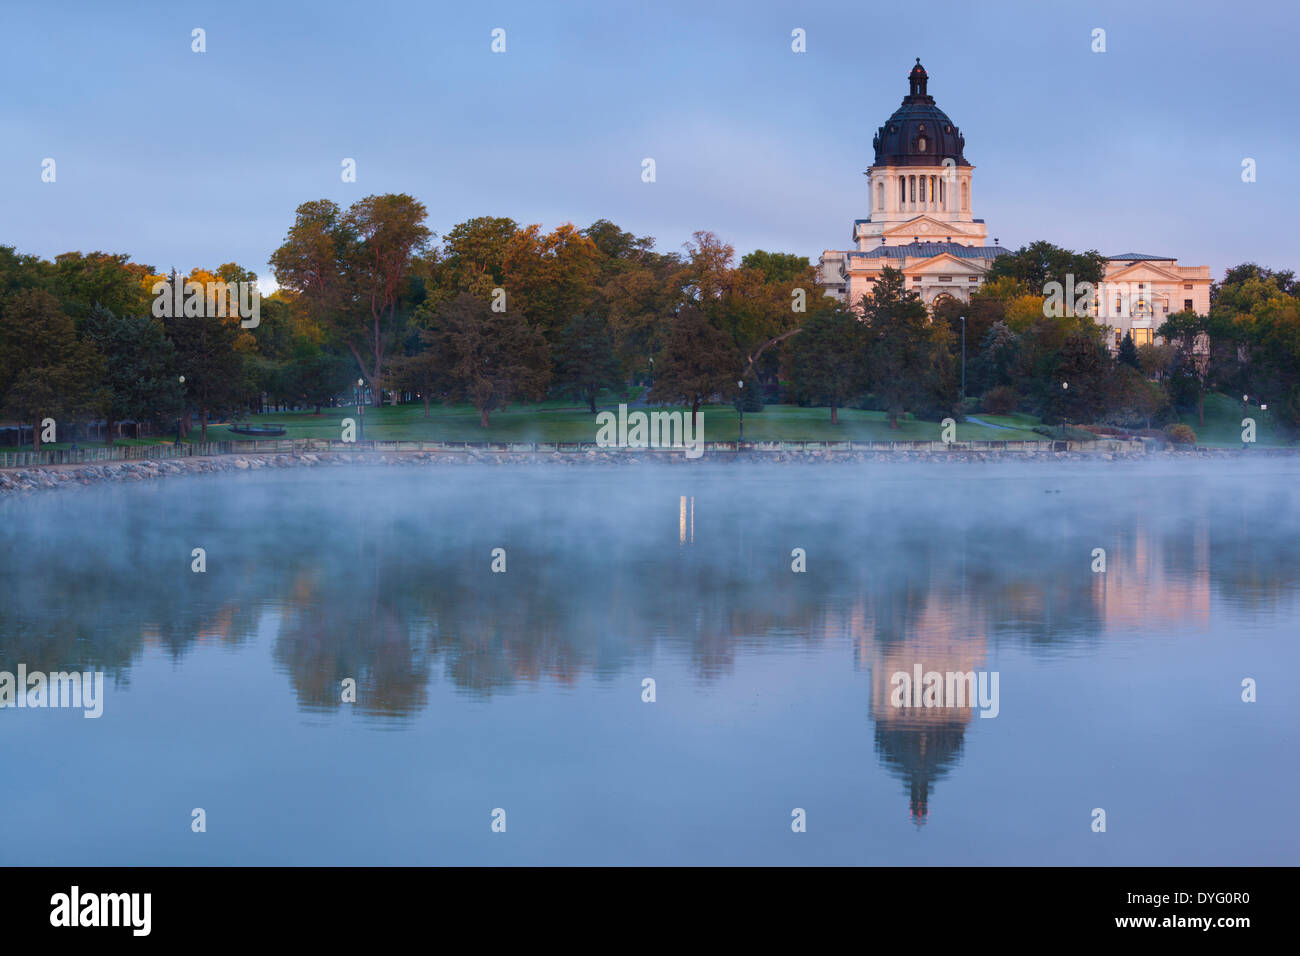 USA, South Dakota, Pierre, South Dakota State Capitol exterior at dawn Stock Photo